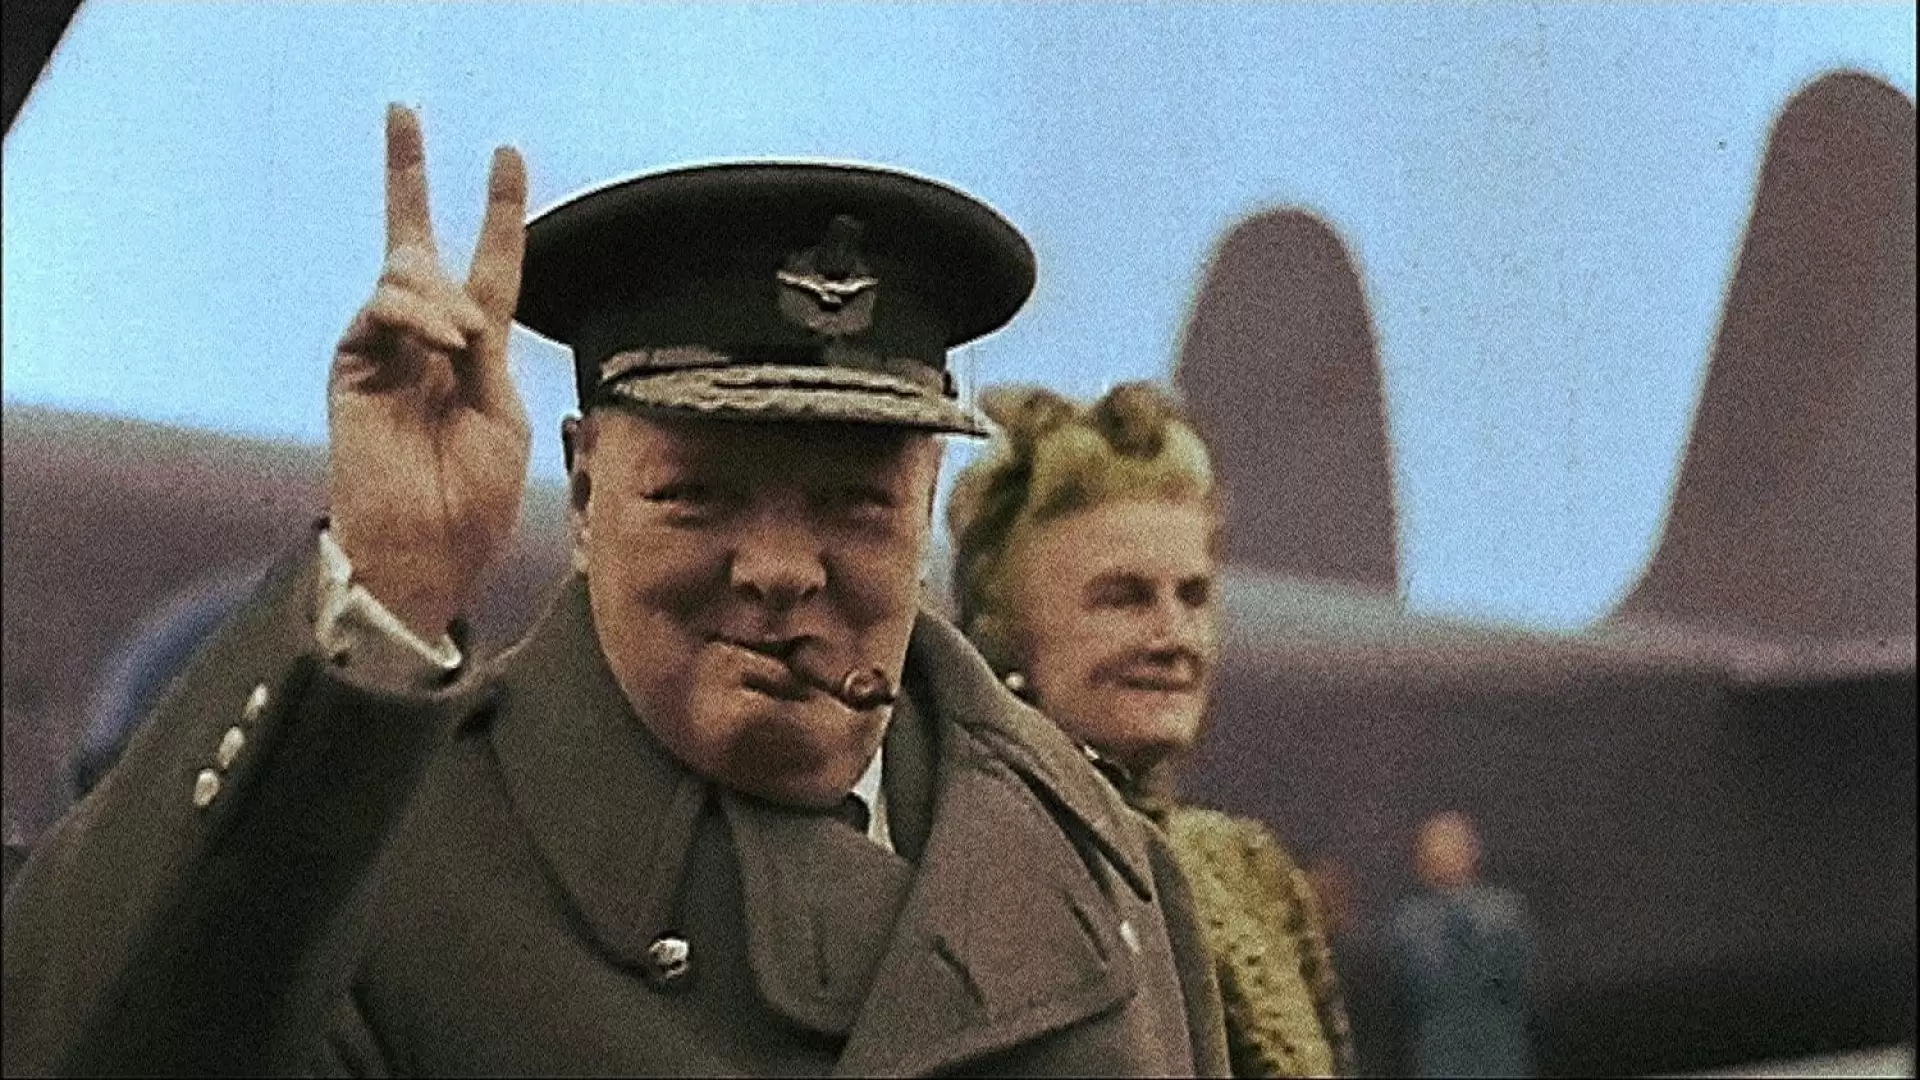 دانلود مستند Winston Churchill: A Giant in the Century 2015 (وینستون چرچیل: خون آشام قرن)